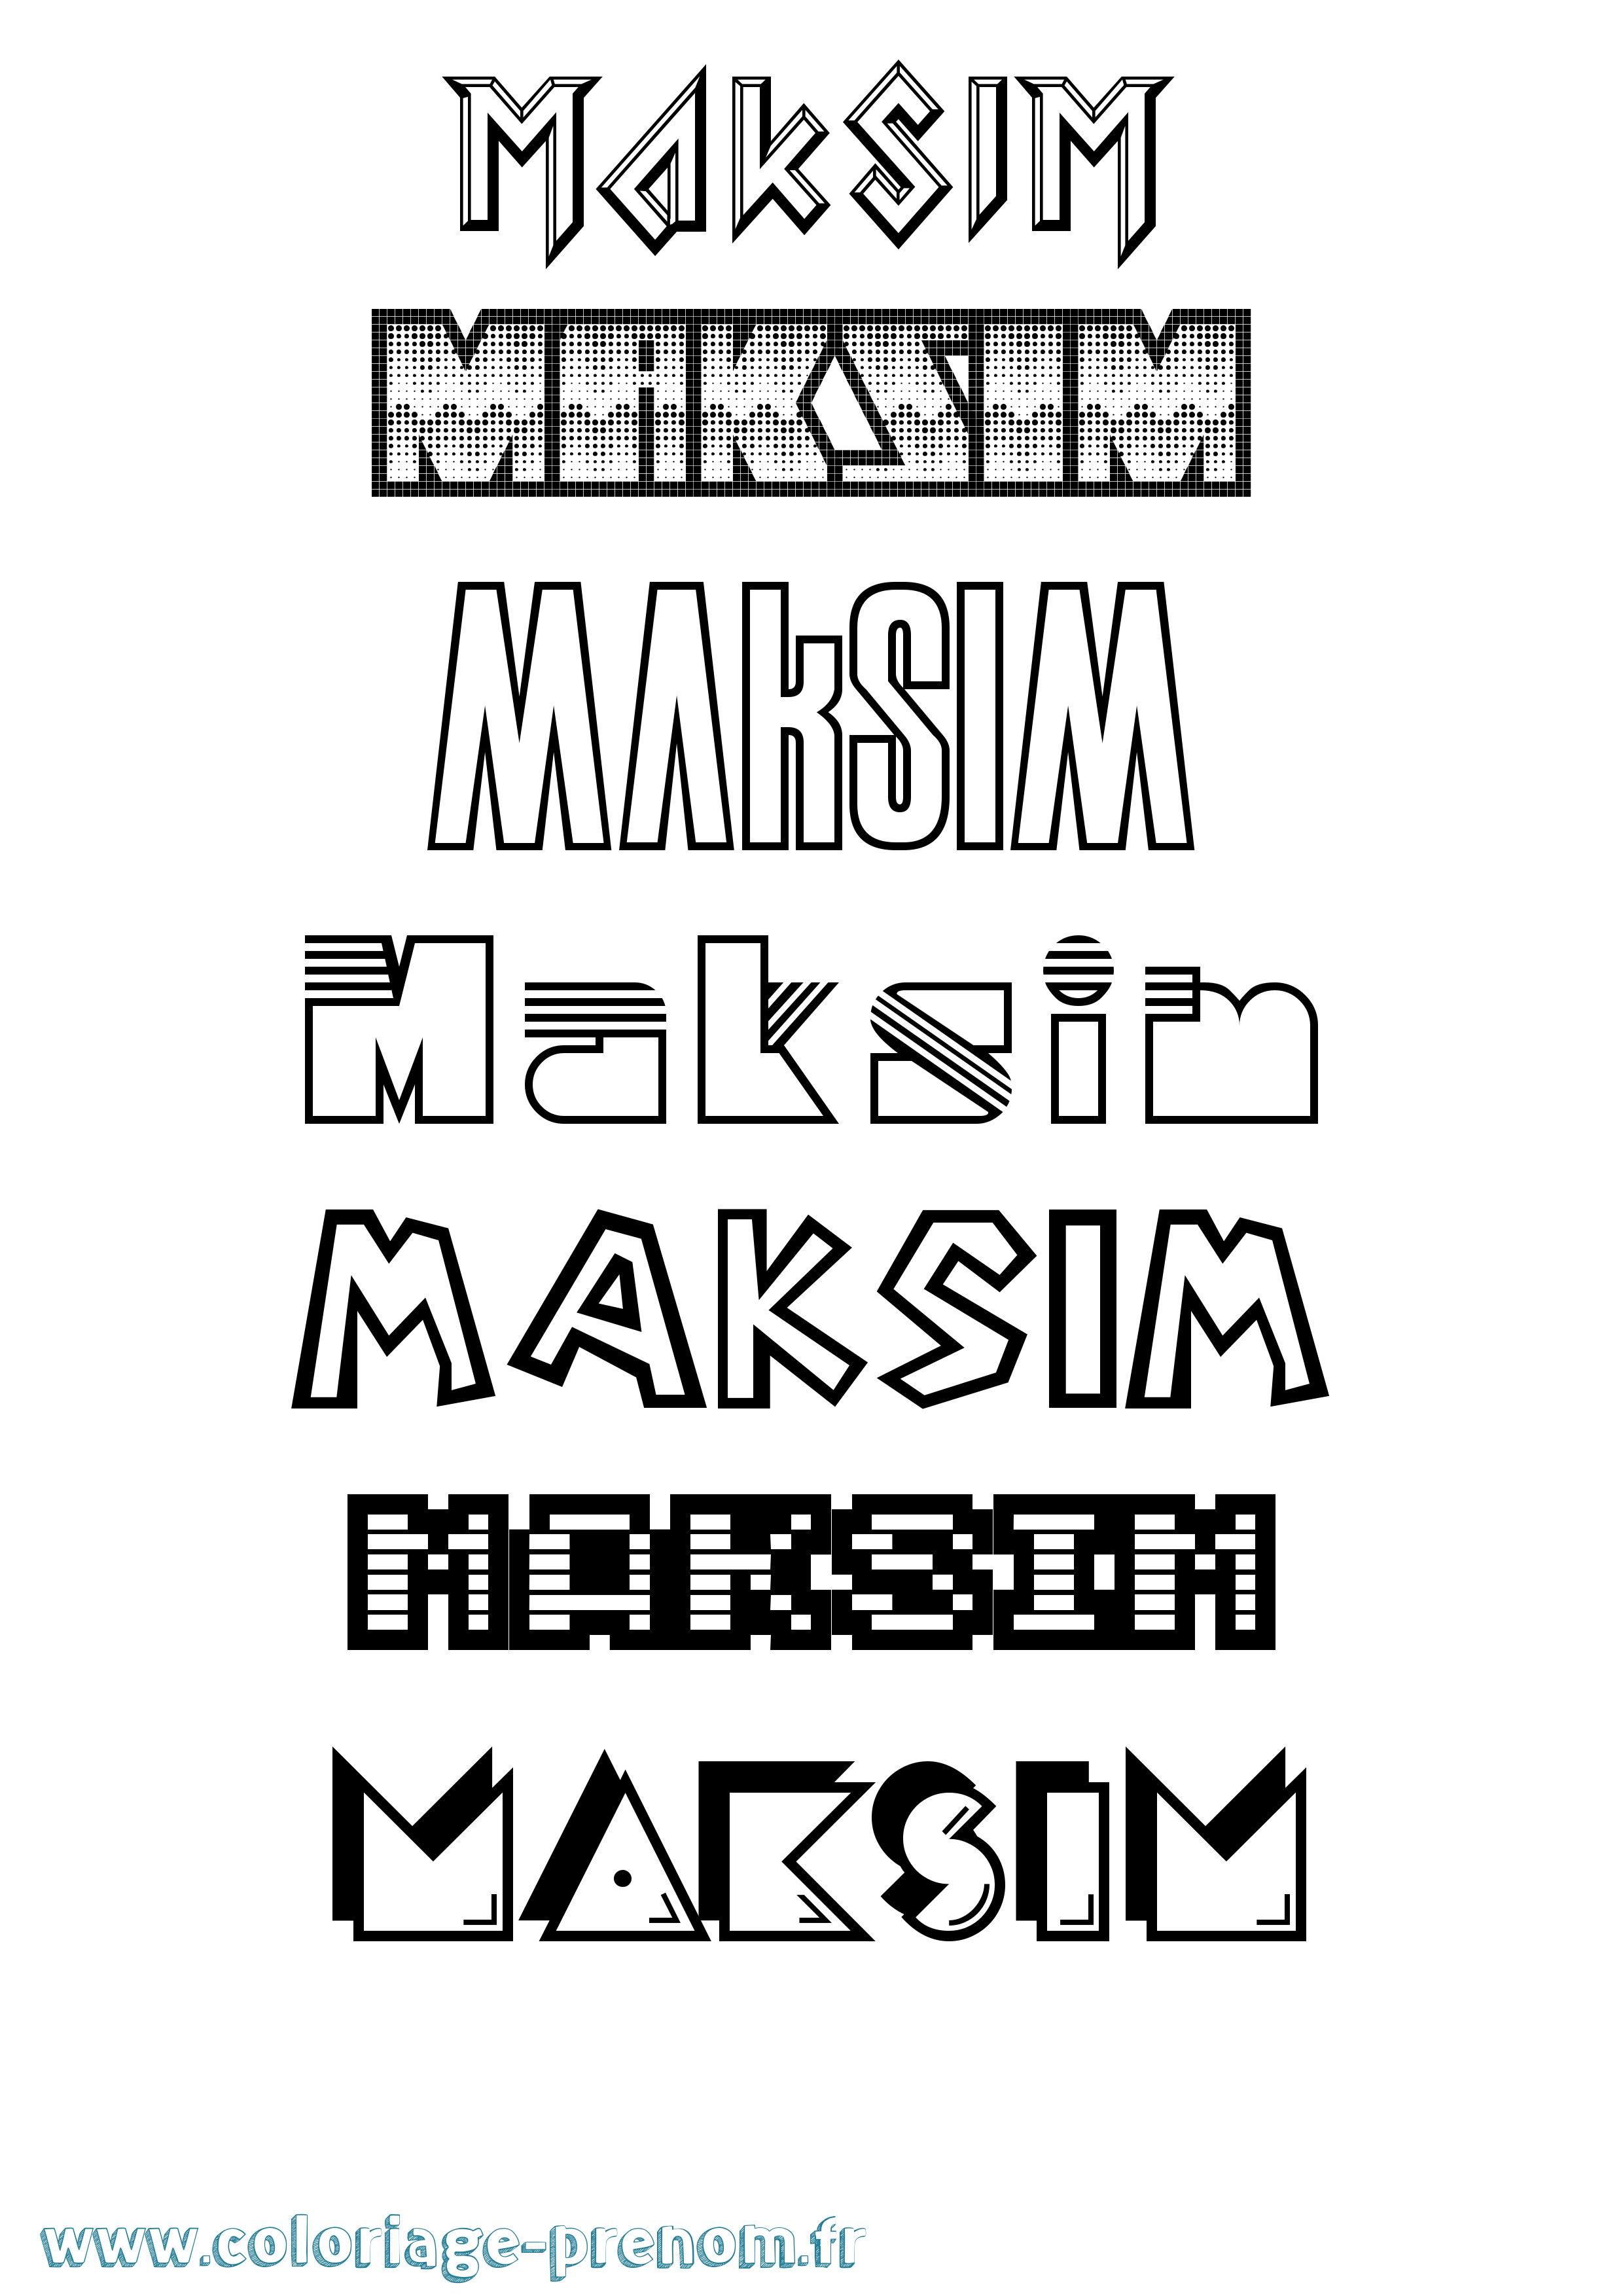 Coloriage prénom Maksim